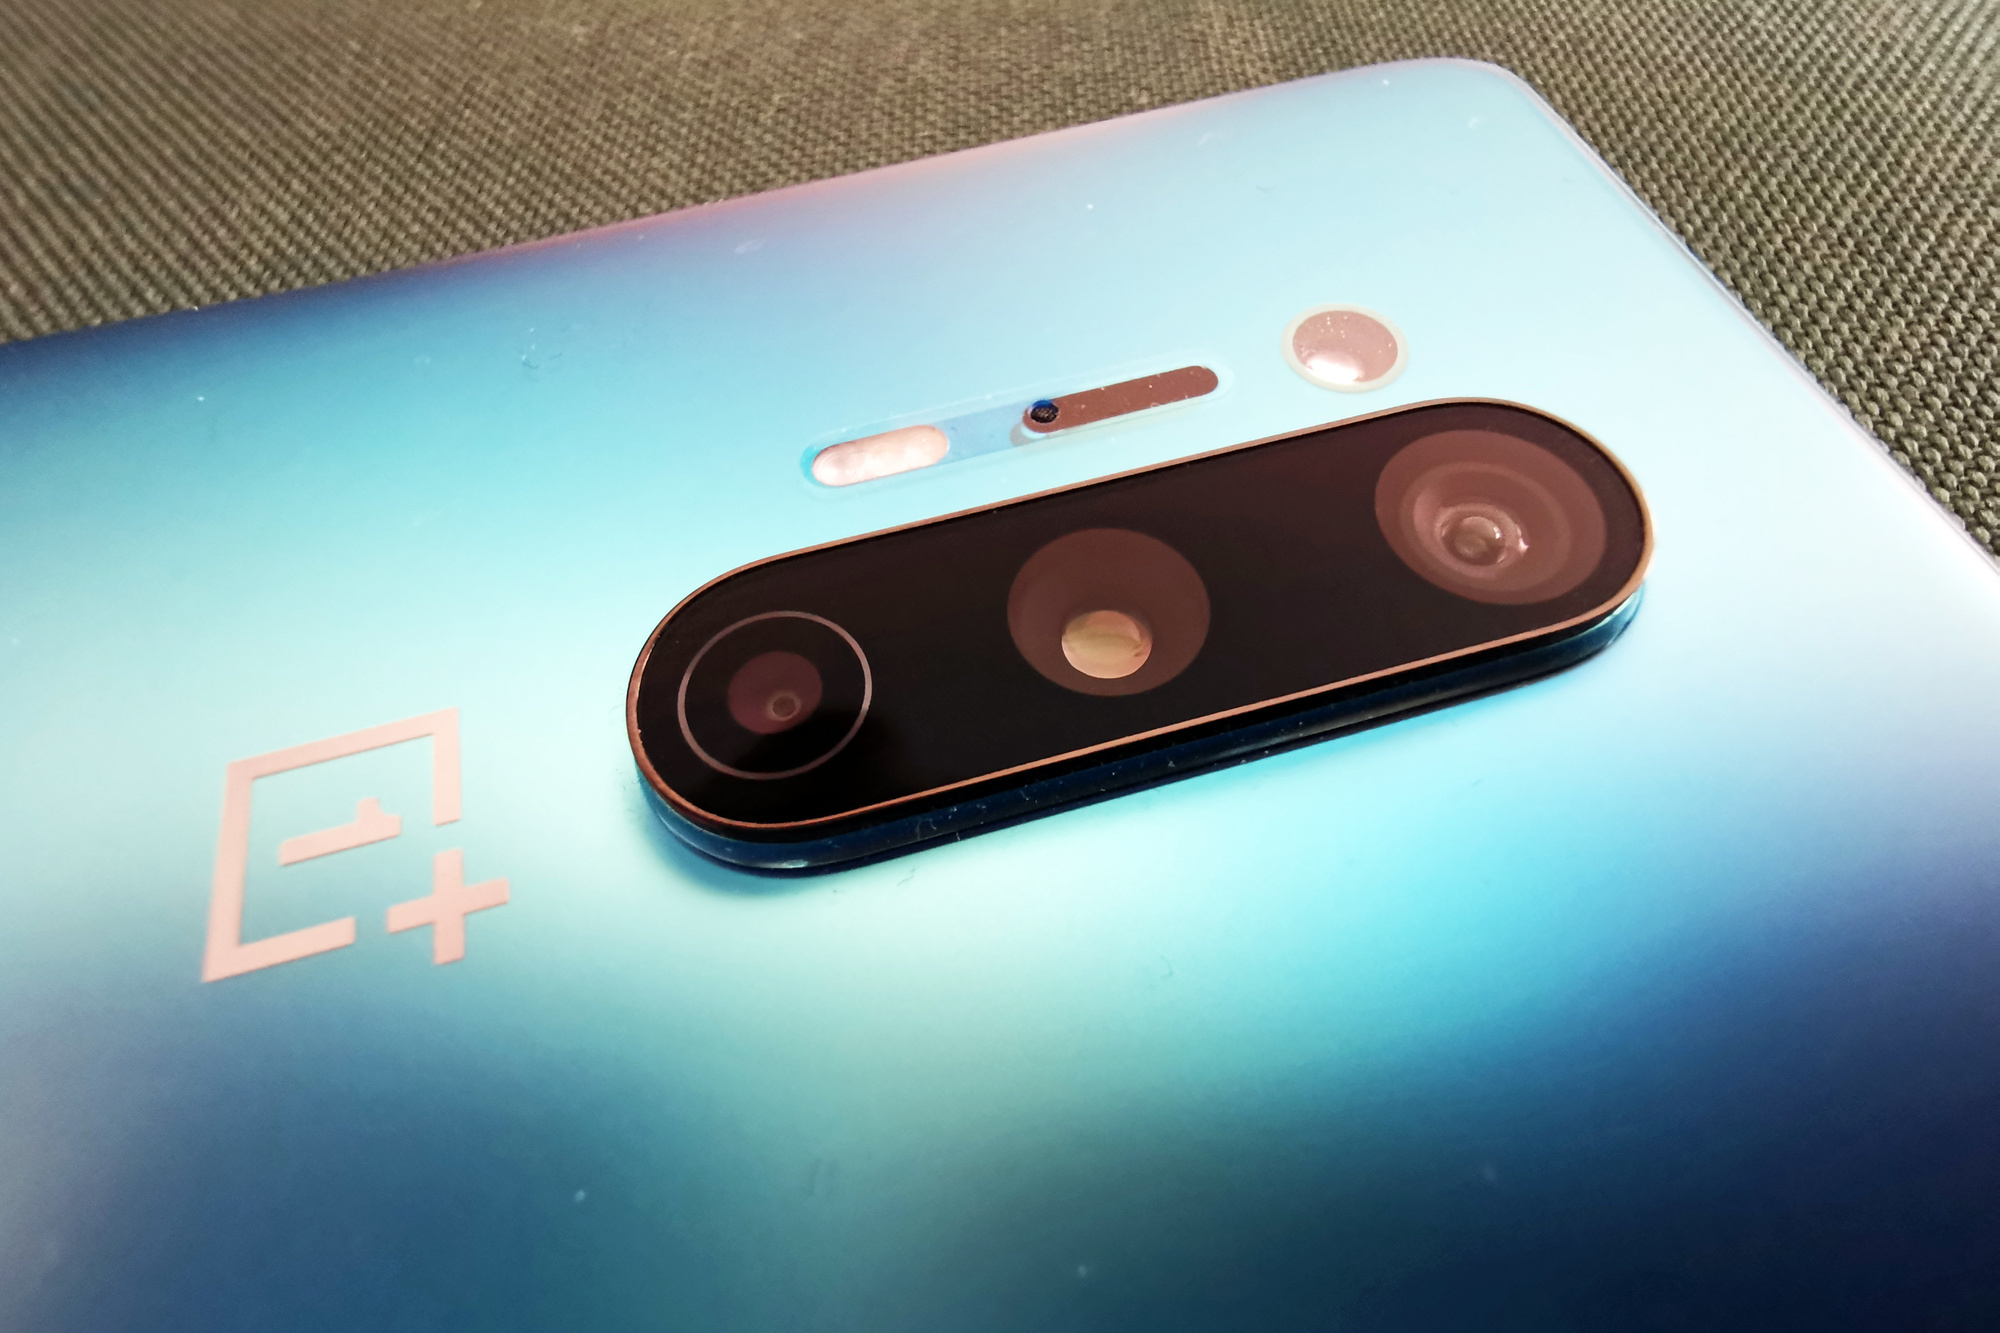 Het camera-eiland van de OnePlus 8 Pro., MvdV